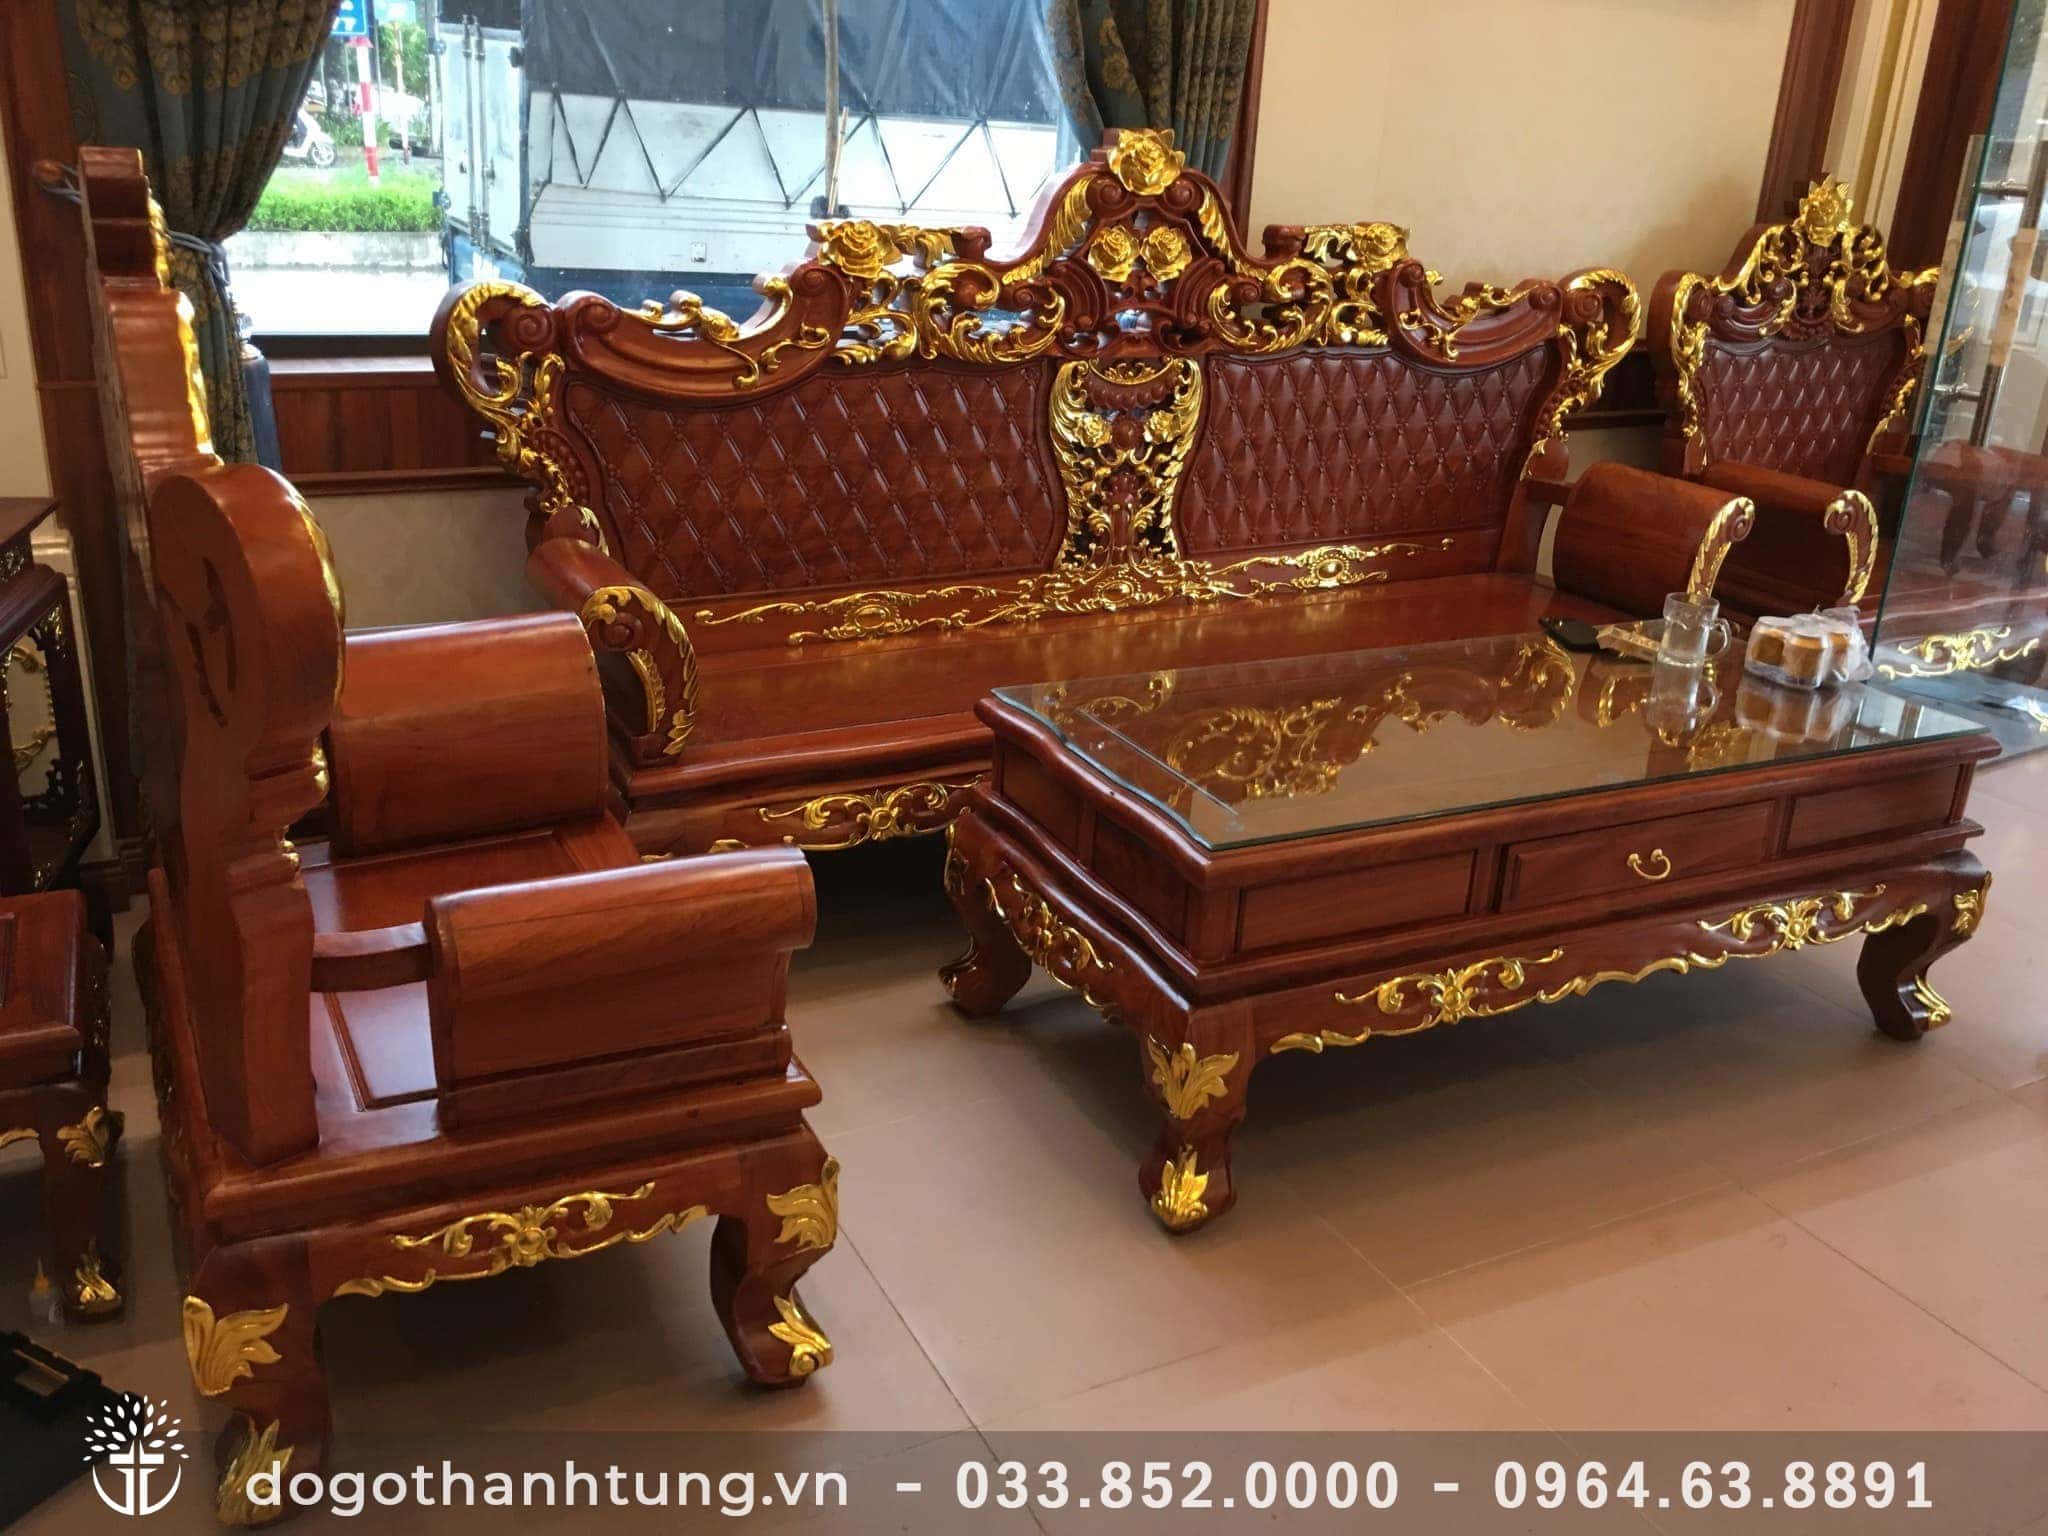 Bộ bàn ghế Hoàng Gia dát vàng Ninh Bình: Với chất liệu đồng vàng và sofa bọc da cao cấp, bộ bàn ghế Hoàng Gia tại Ninh Bình sẽ mang đến cho không gian phòng khách của bạn một nét sang trọng và quý phái. Hãy cùng chúng tôi khám phá sự đẳng cấp của sản phẩm này.